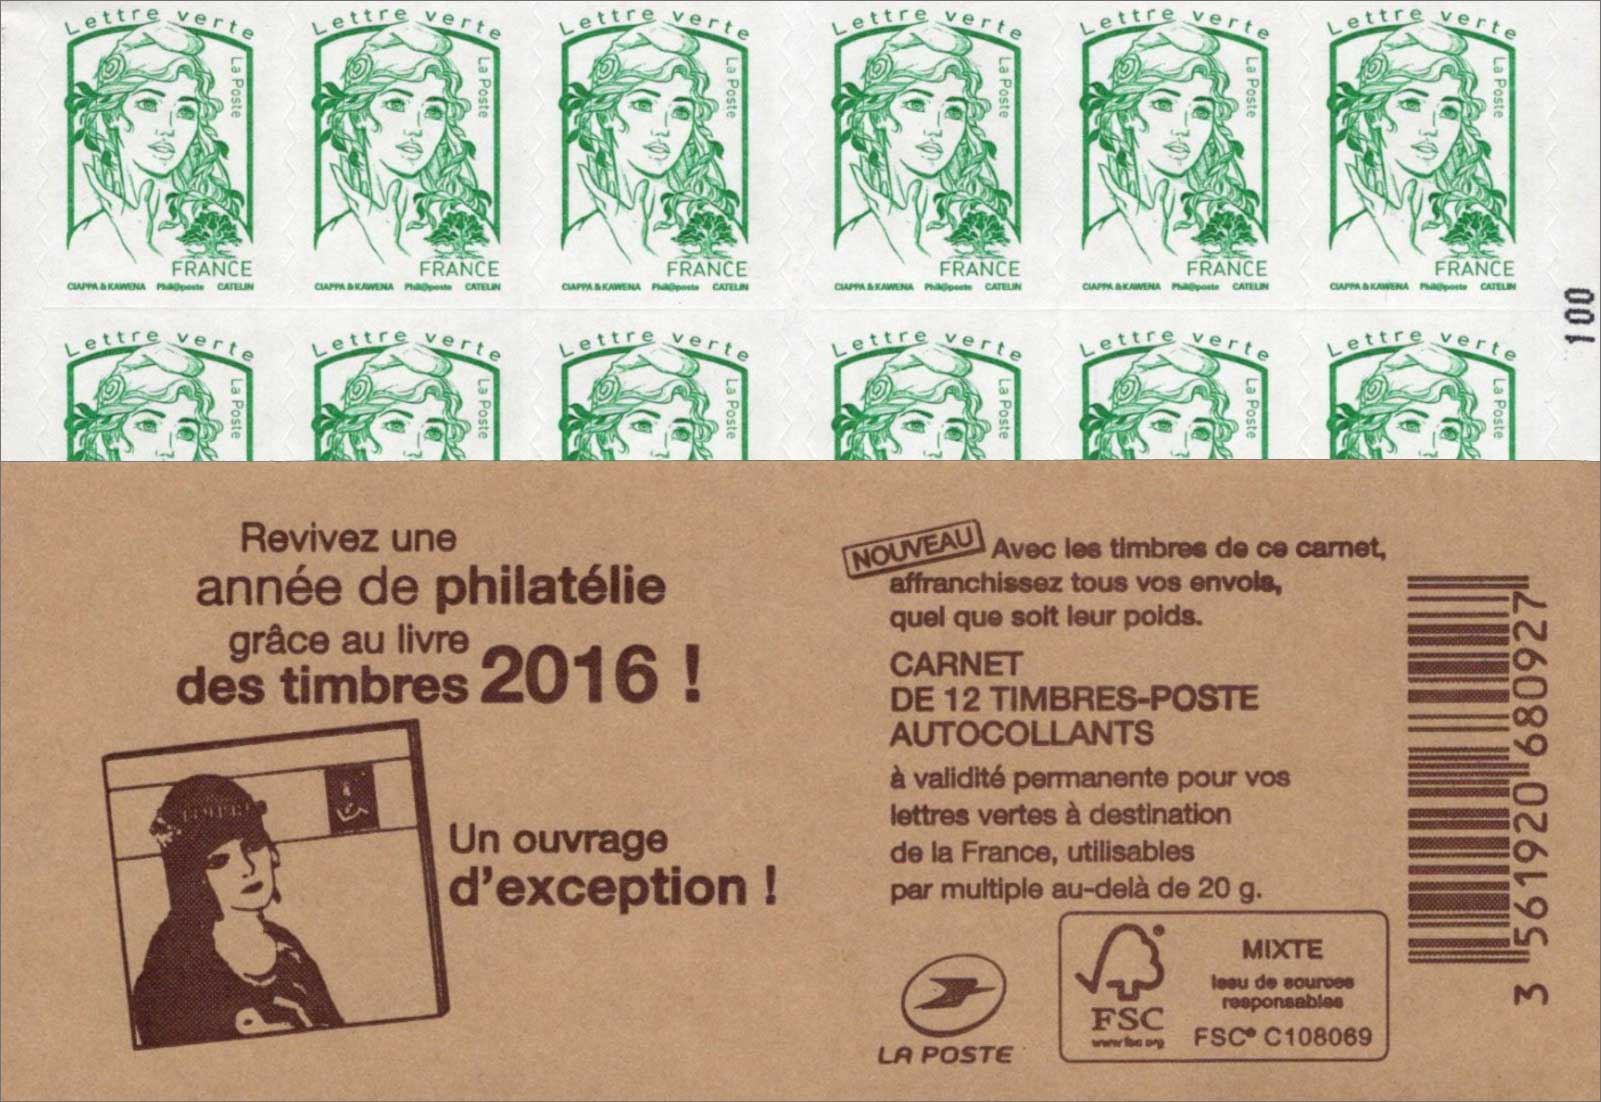 Revivez une année de philatélie grâce au livre des timbres 2016